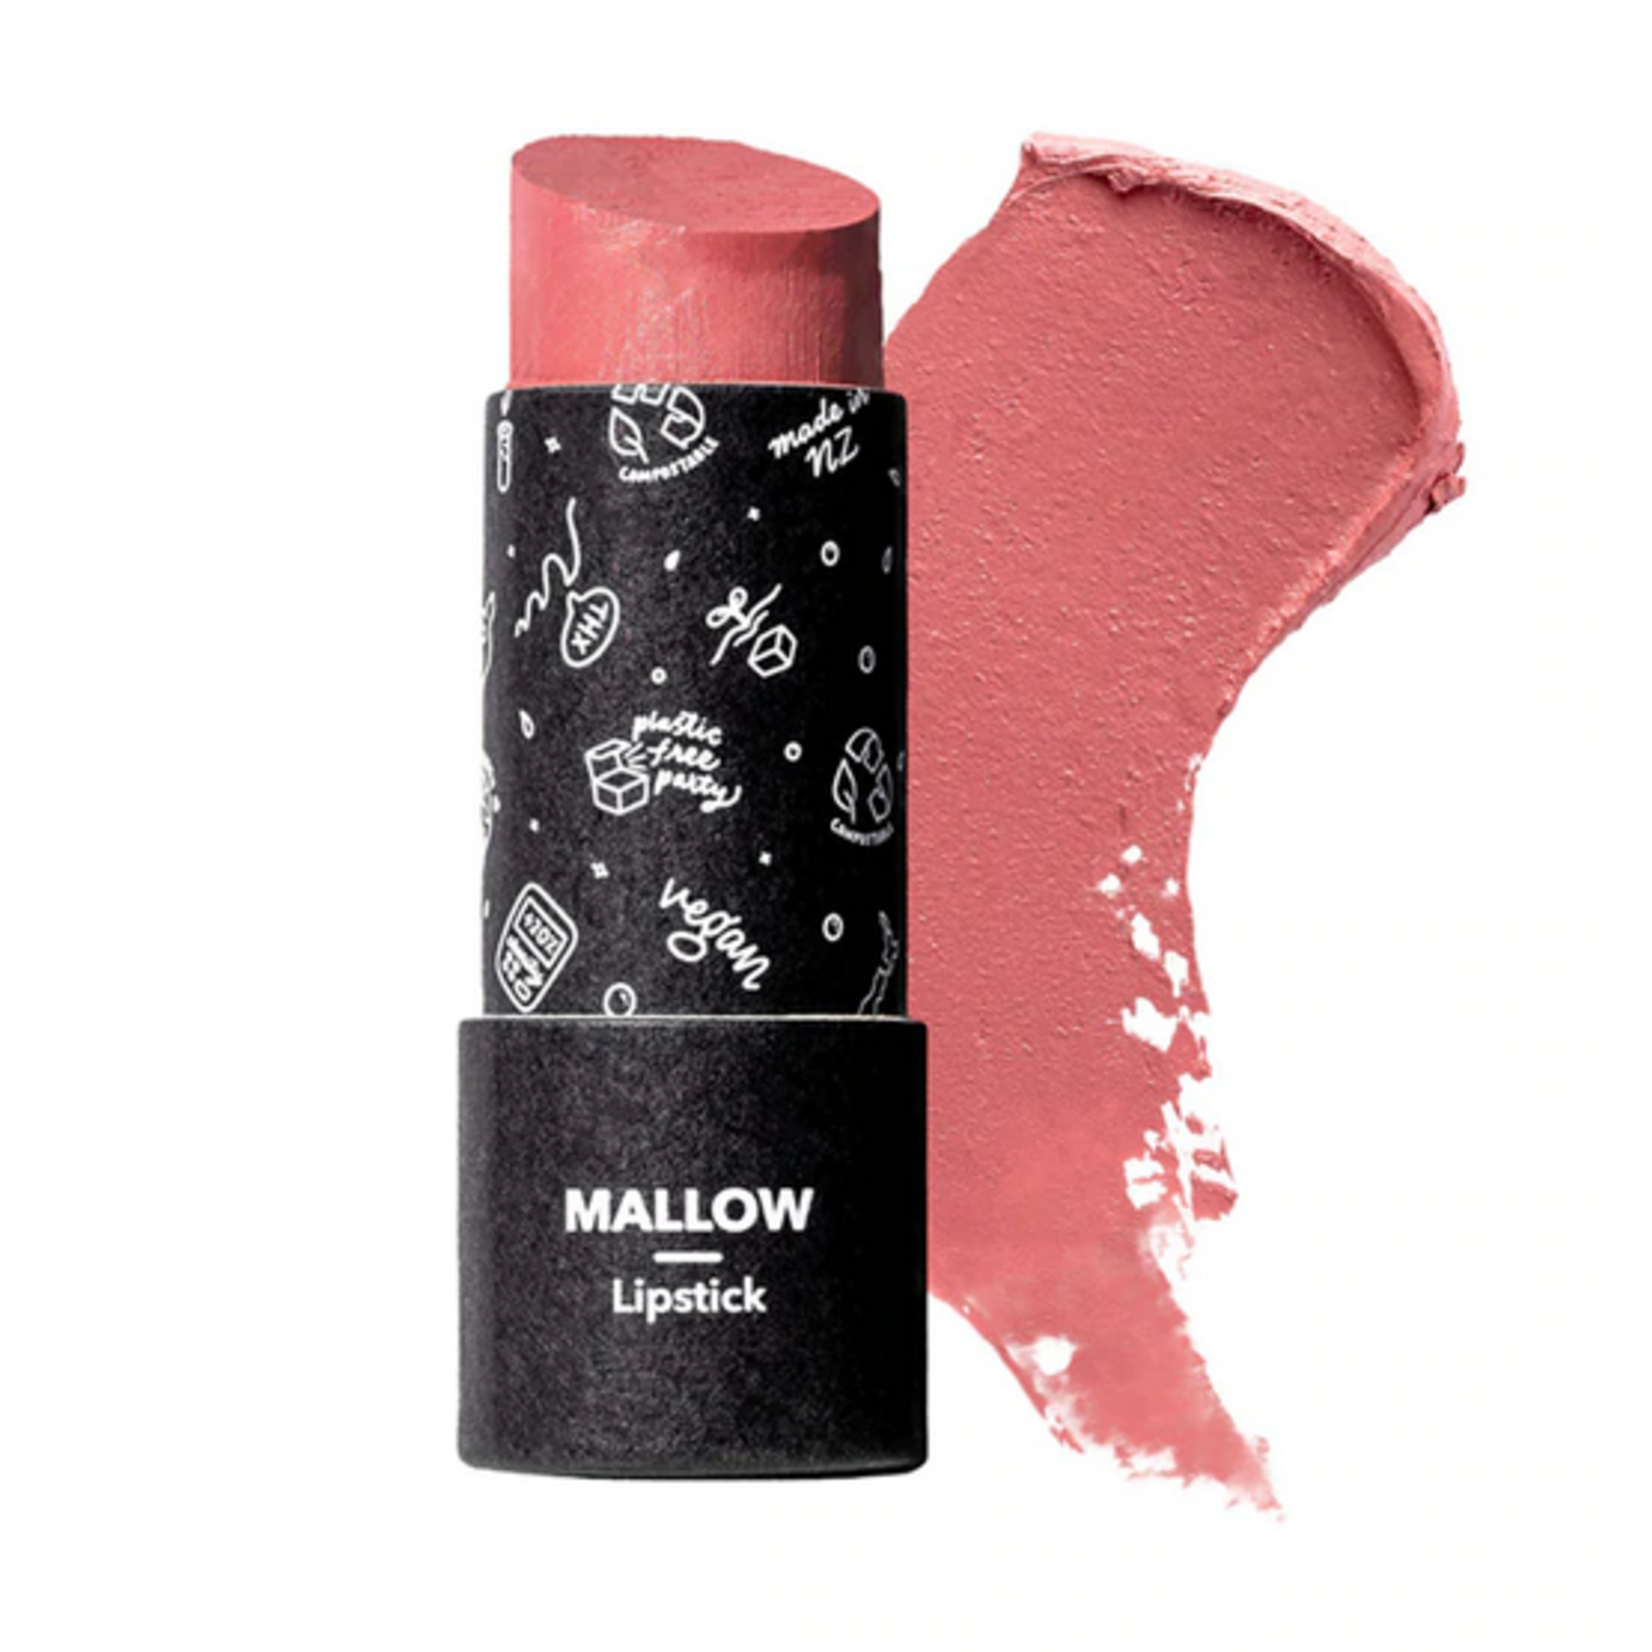 Ethique ethique Lipstick Mallow Blush Pink 8g